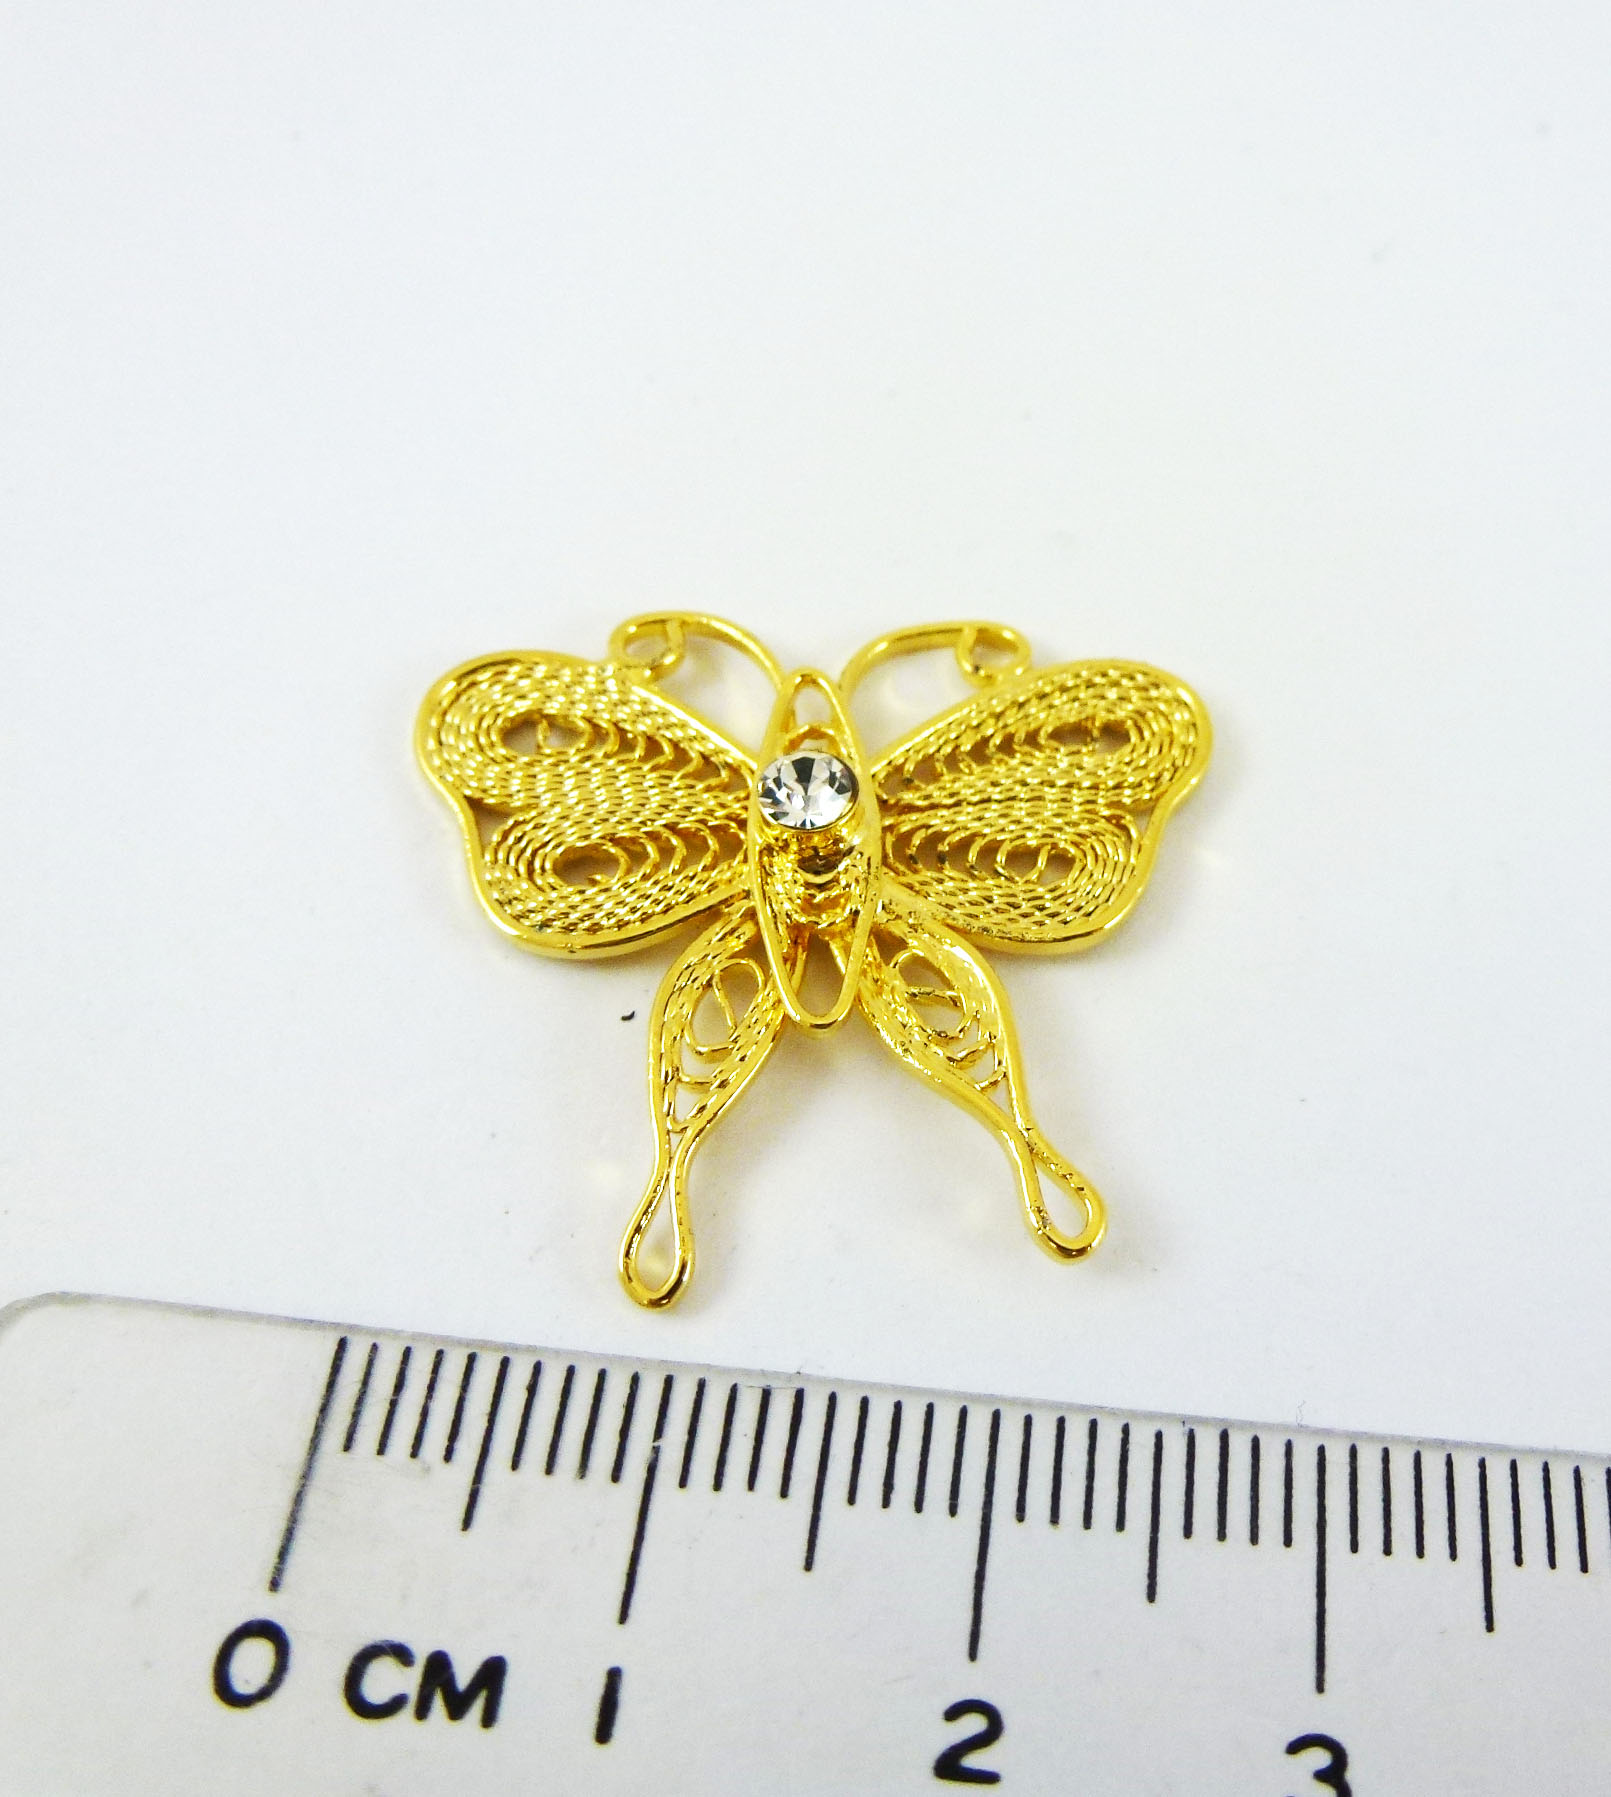 銅鍍金色螺紋線條單鑽蝴蝶